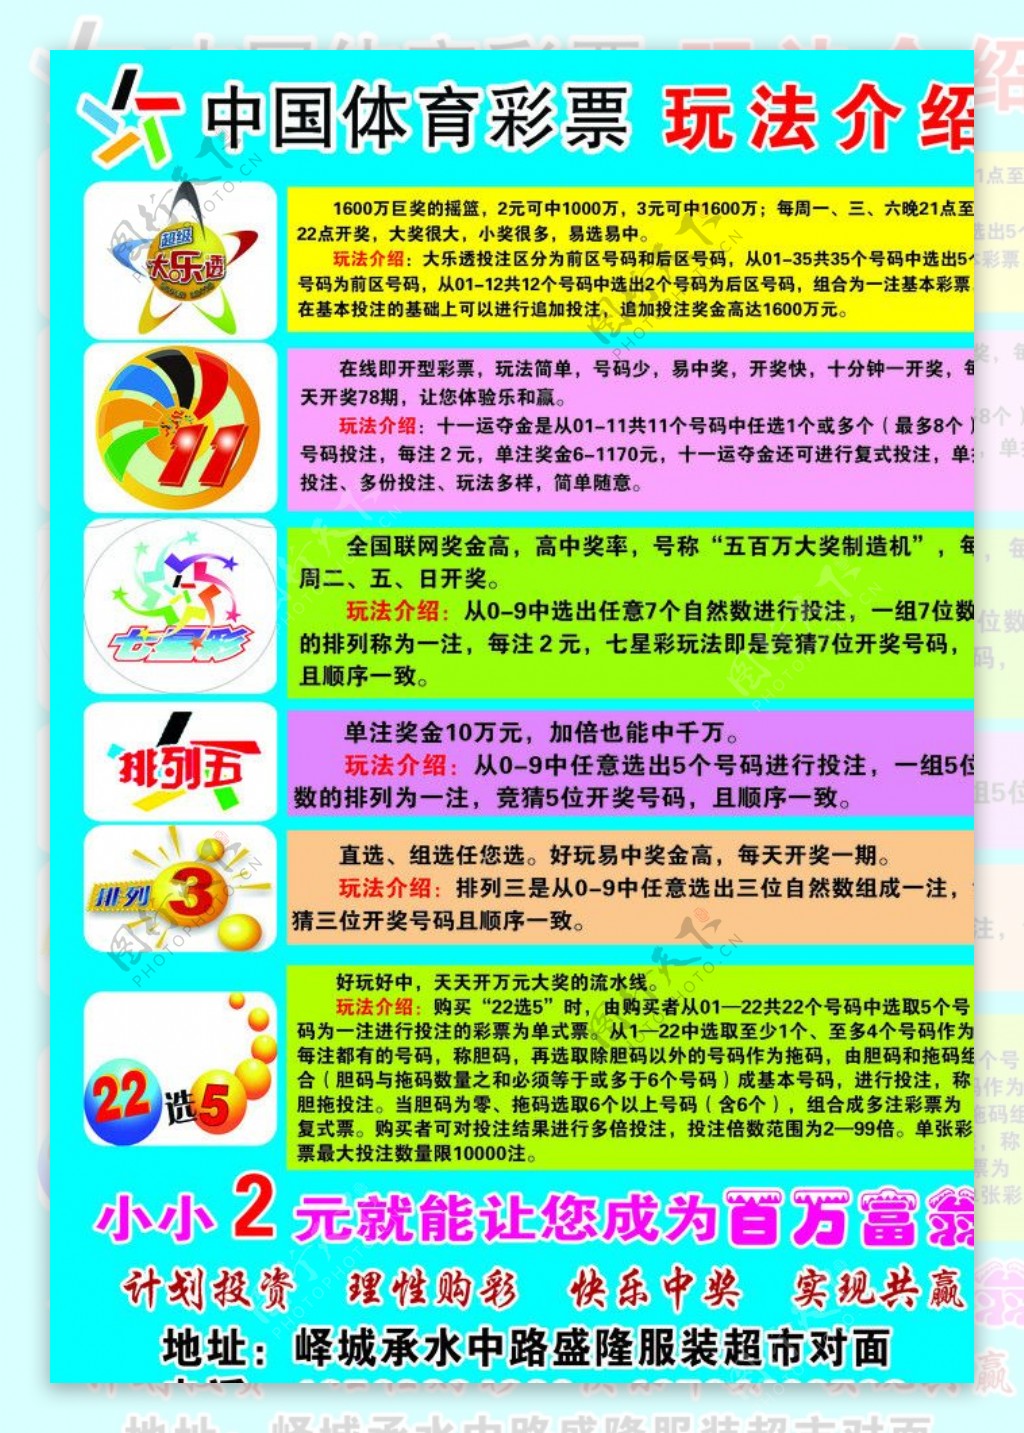 中国体育彩票玩法介绍图片